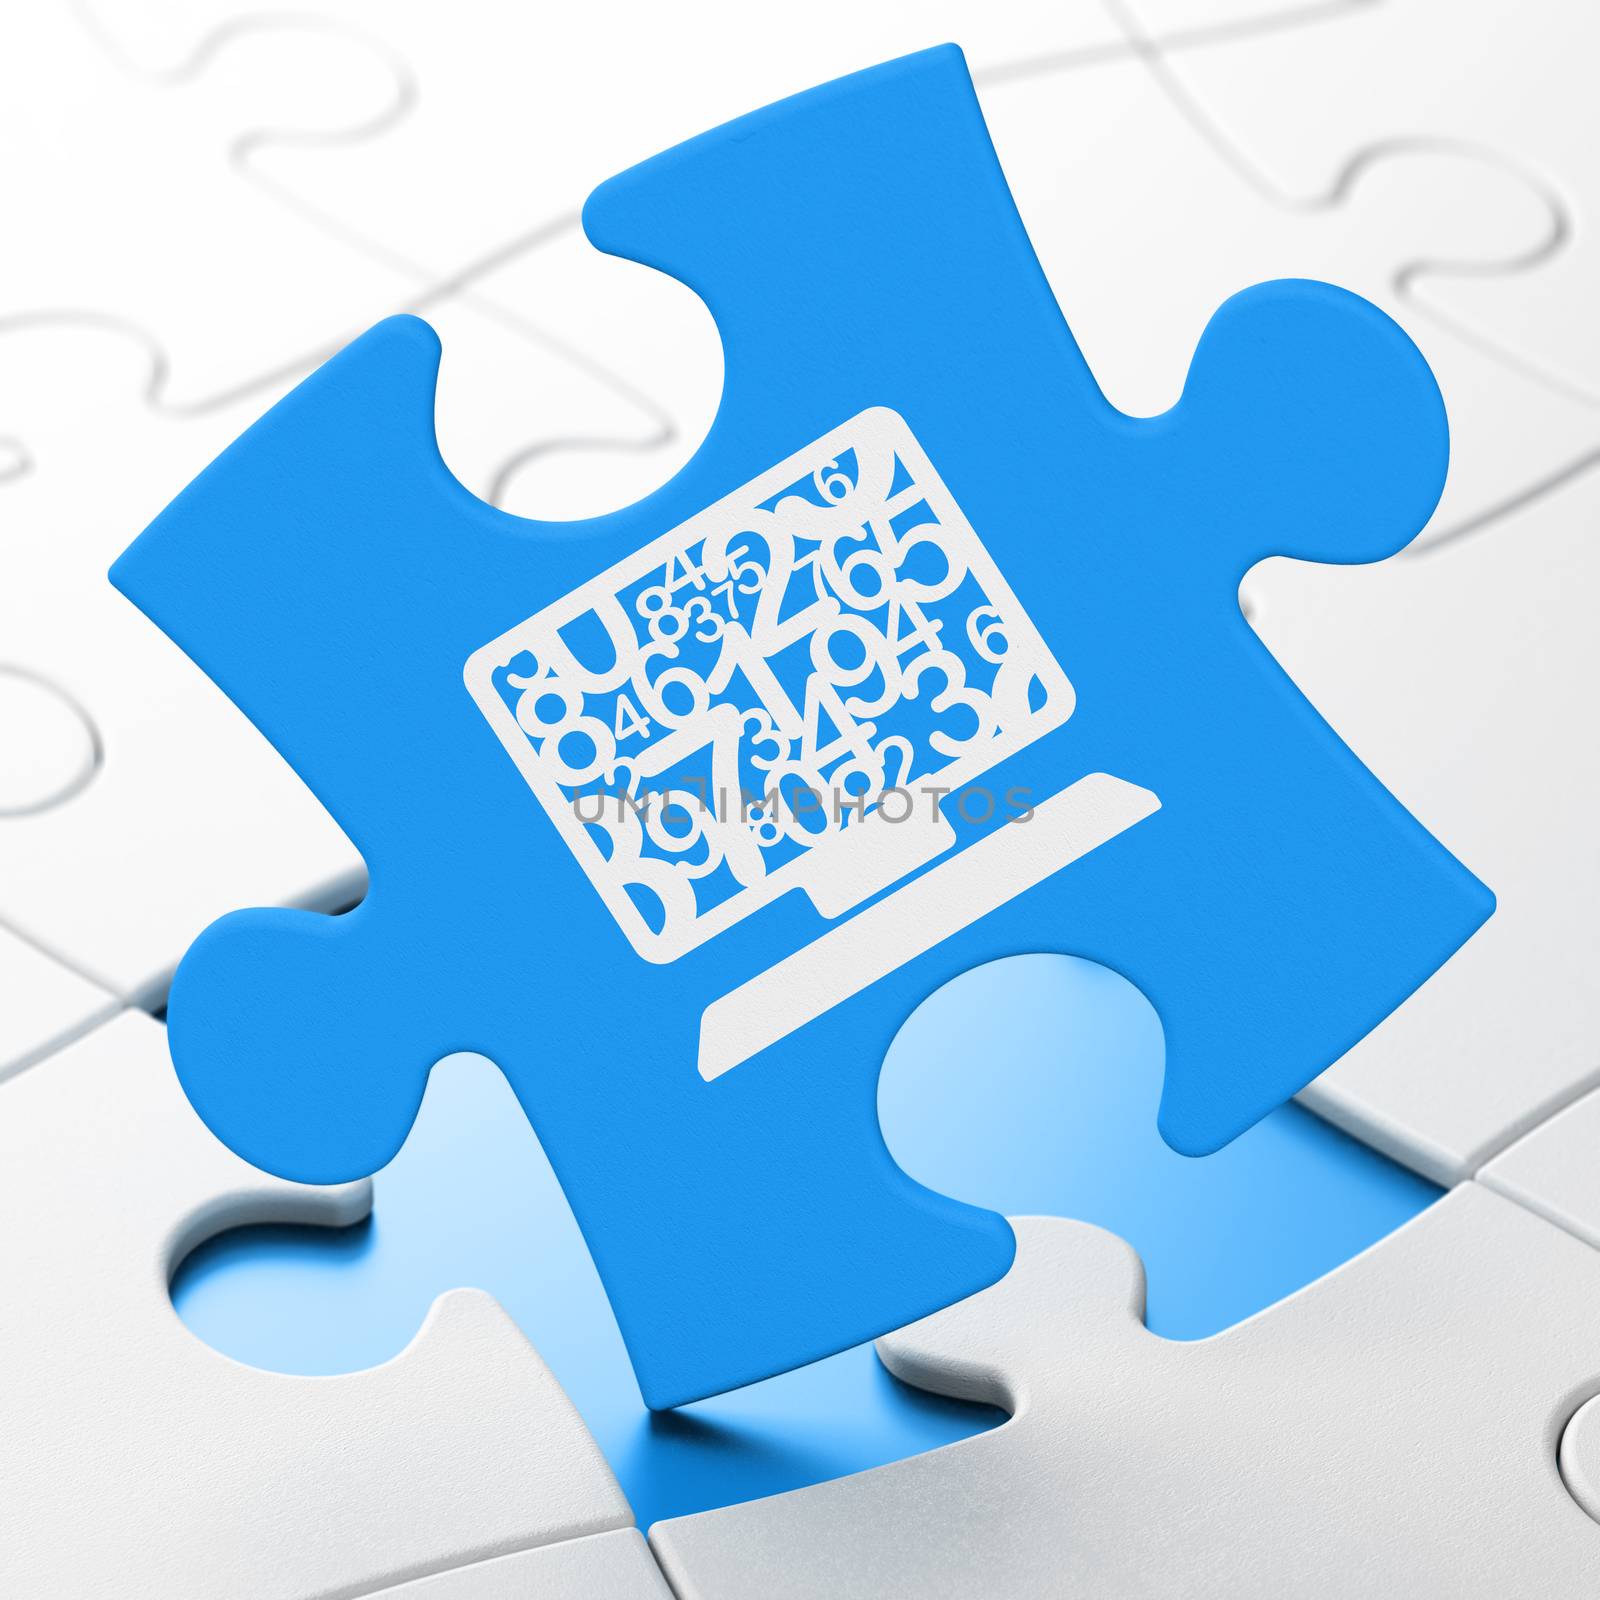 Education concept: Computer Pc on Blue puzzle pieces background, 3d render